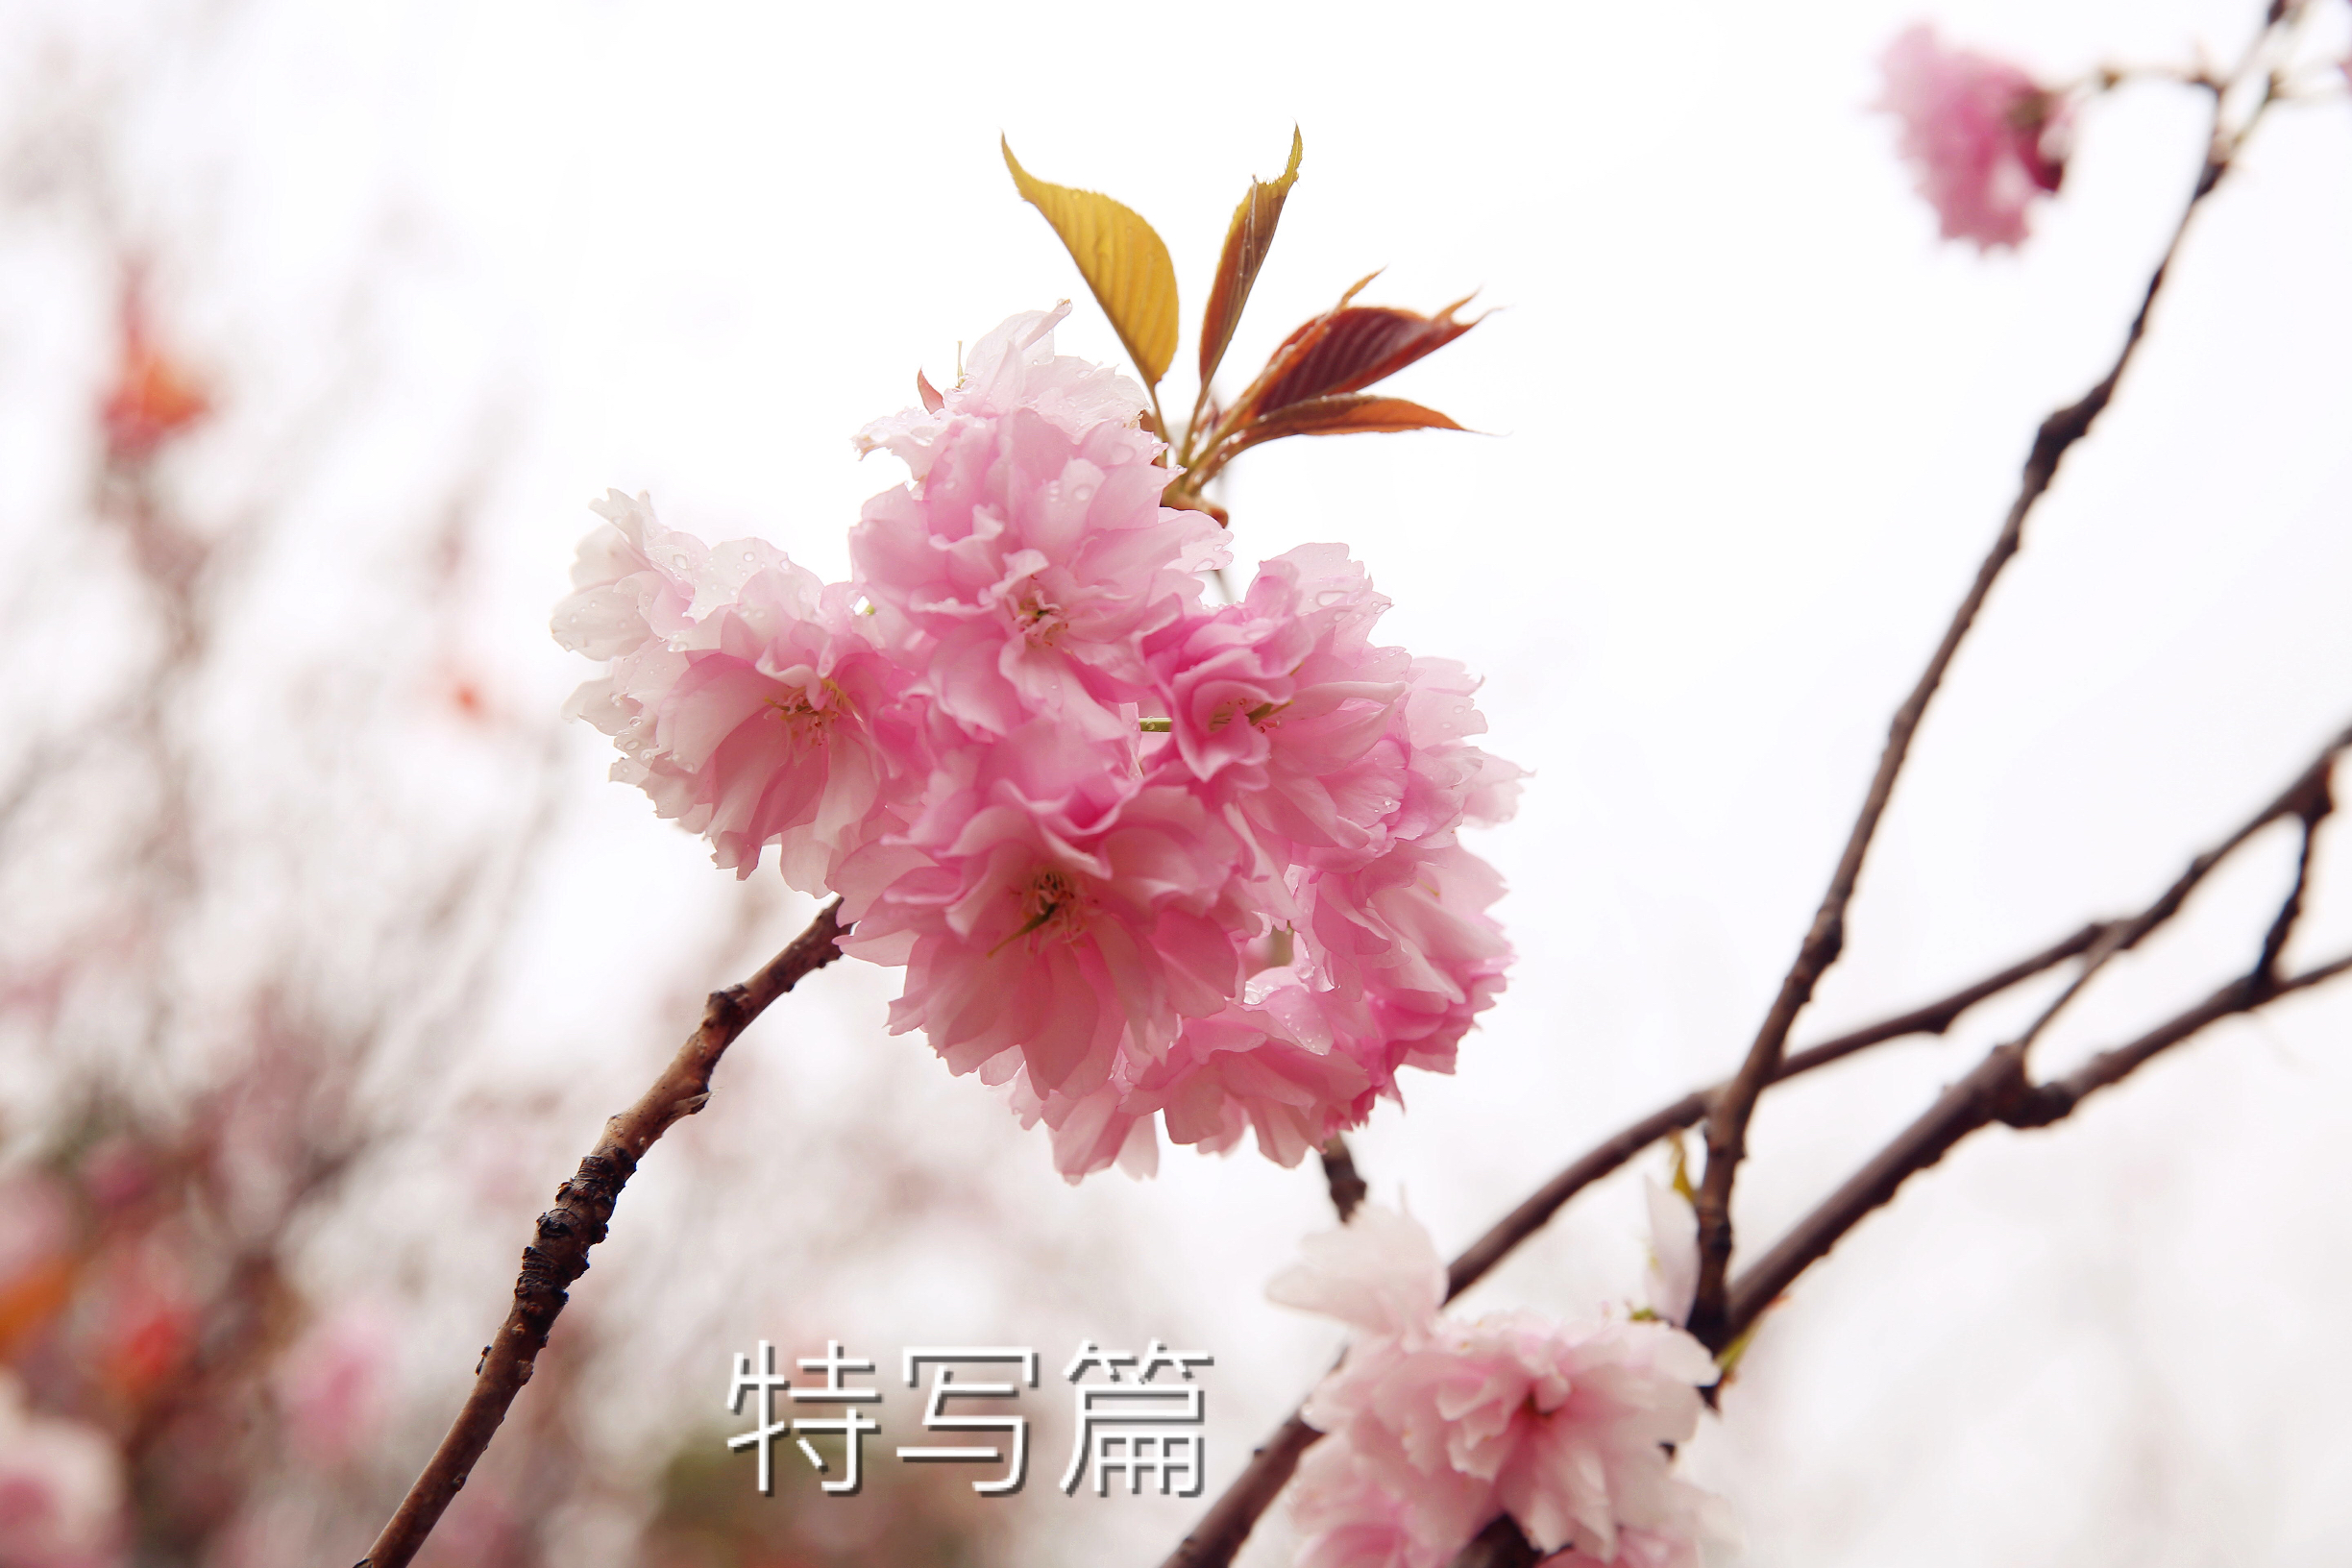 一棵樹櫻花節